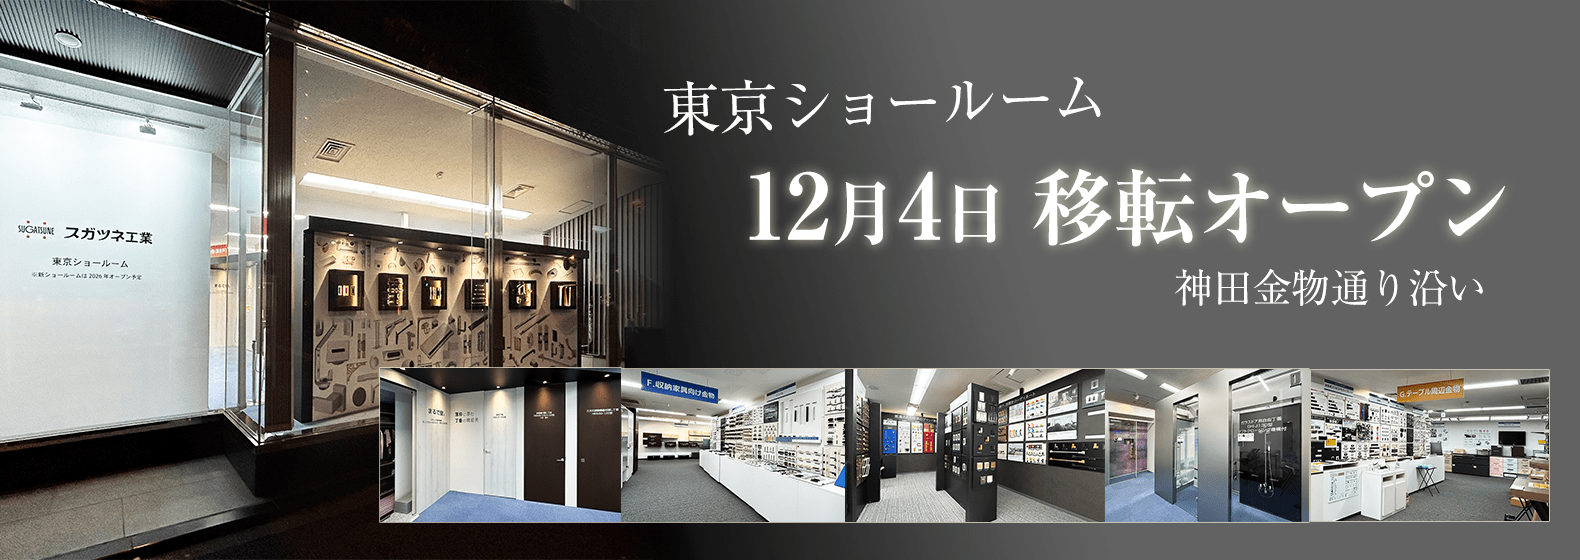 東京ショールーム 12月4日 移転オープン 神田金物通り沿い